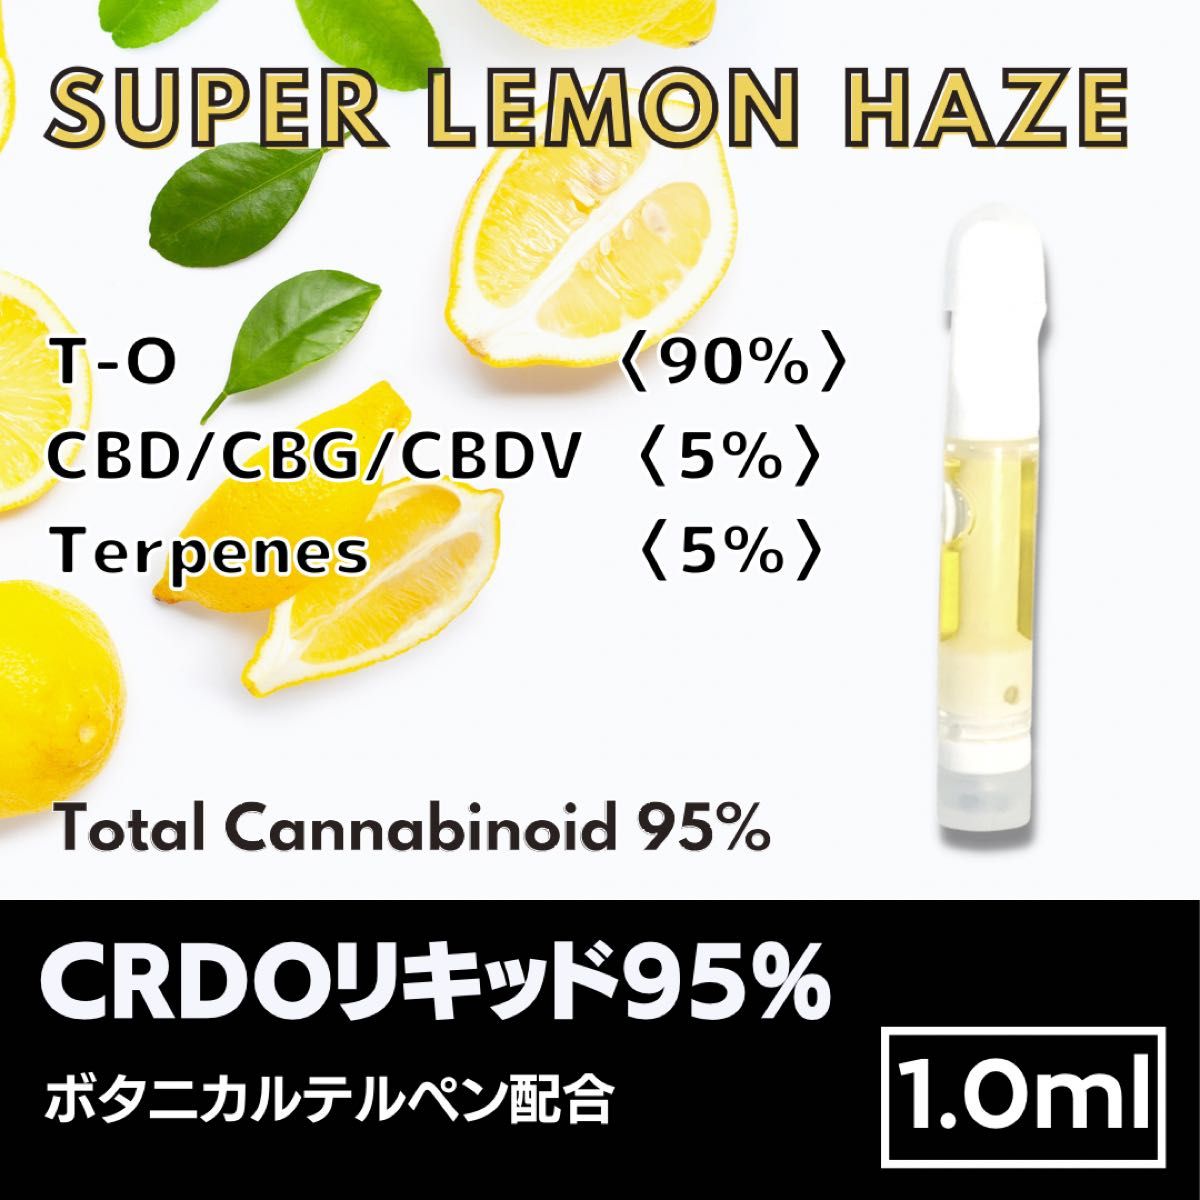 期間限定で特別価格 CBG CBD Super Lemon Haze 2本セット 1.0ml